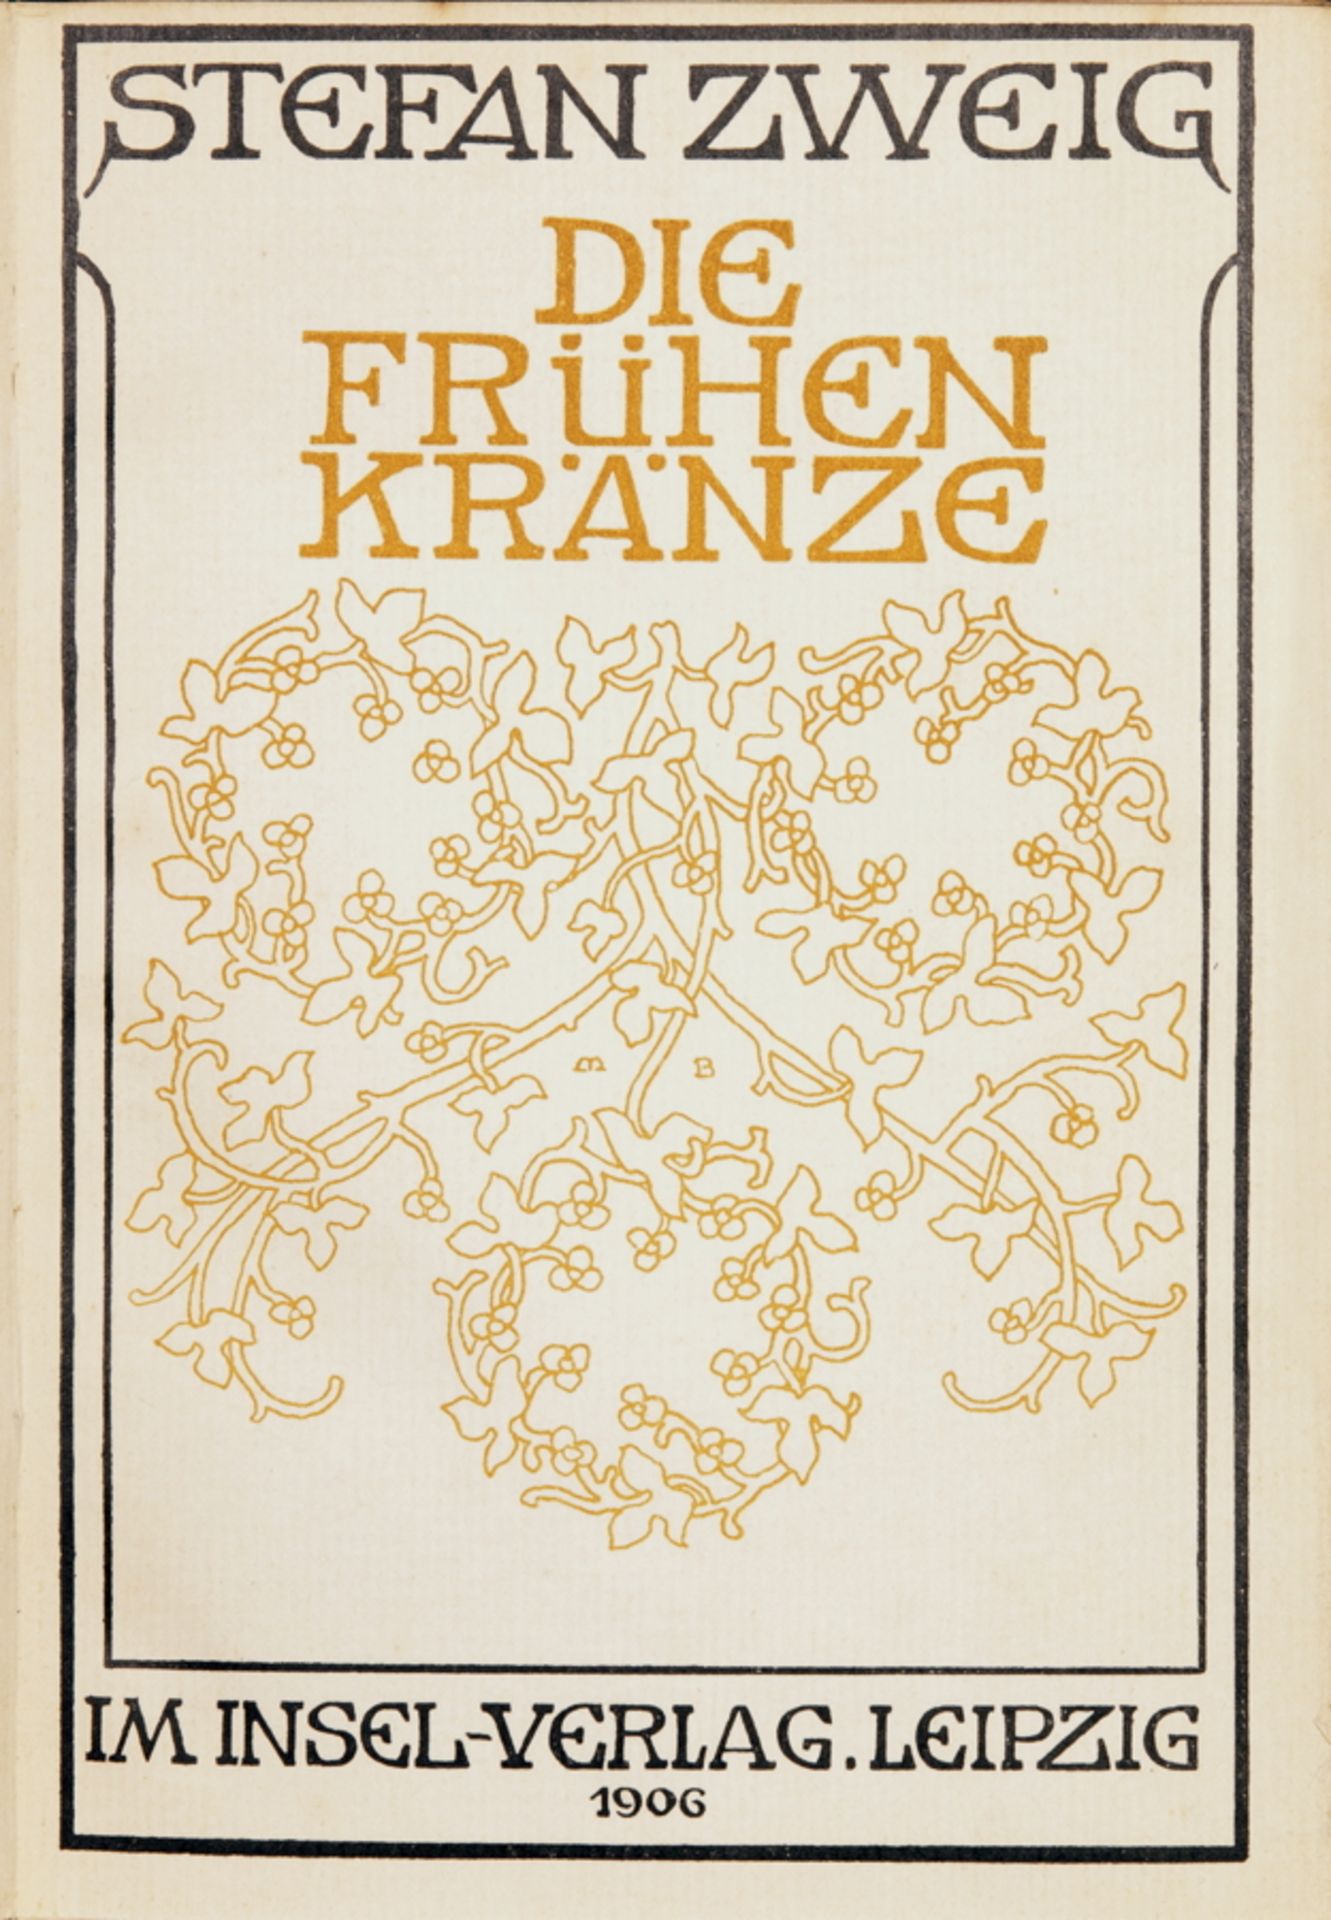 Insel Verlag - Stefan Zweig. Die frühen Kränze. Leipzig, Insel 1906. Mit Titelblattillustration